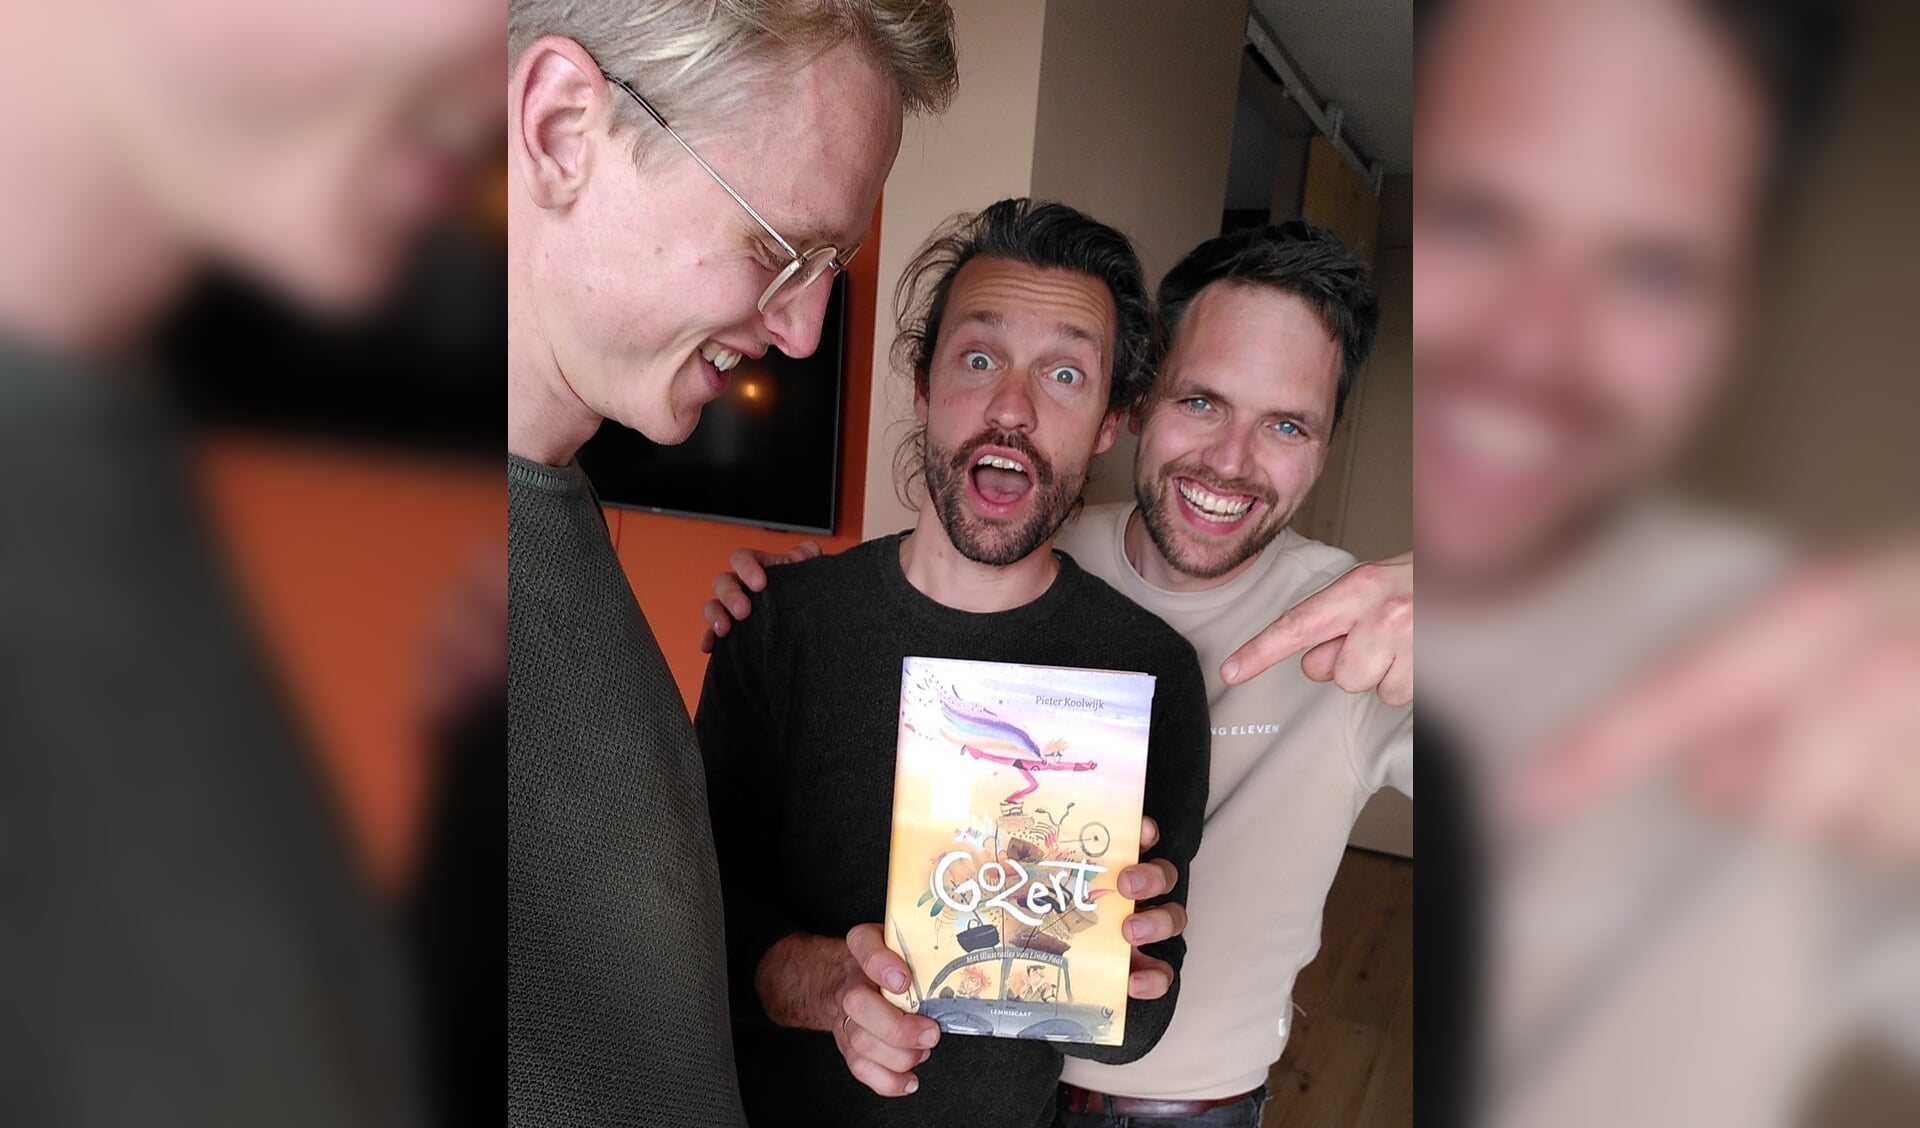 De foto van Johannes, Freek en Patrick, van Jeugdtheater Frets, met het boek Gozert.